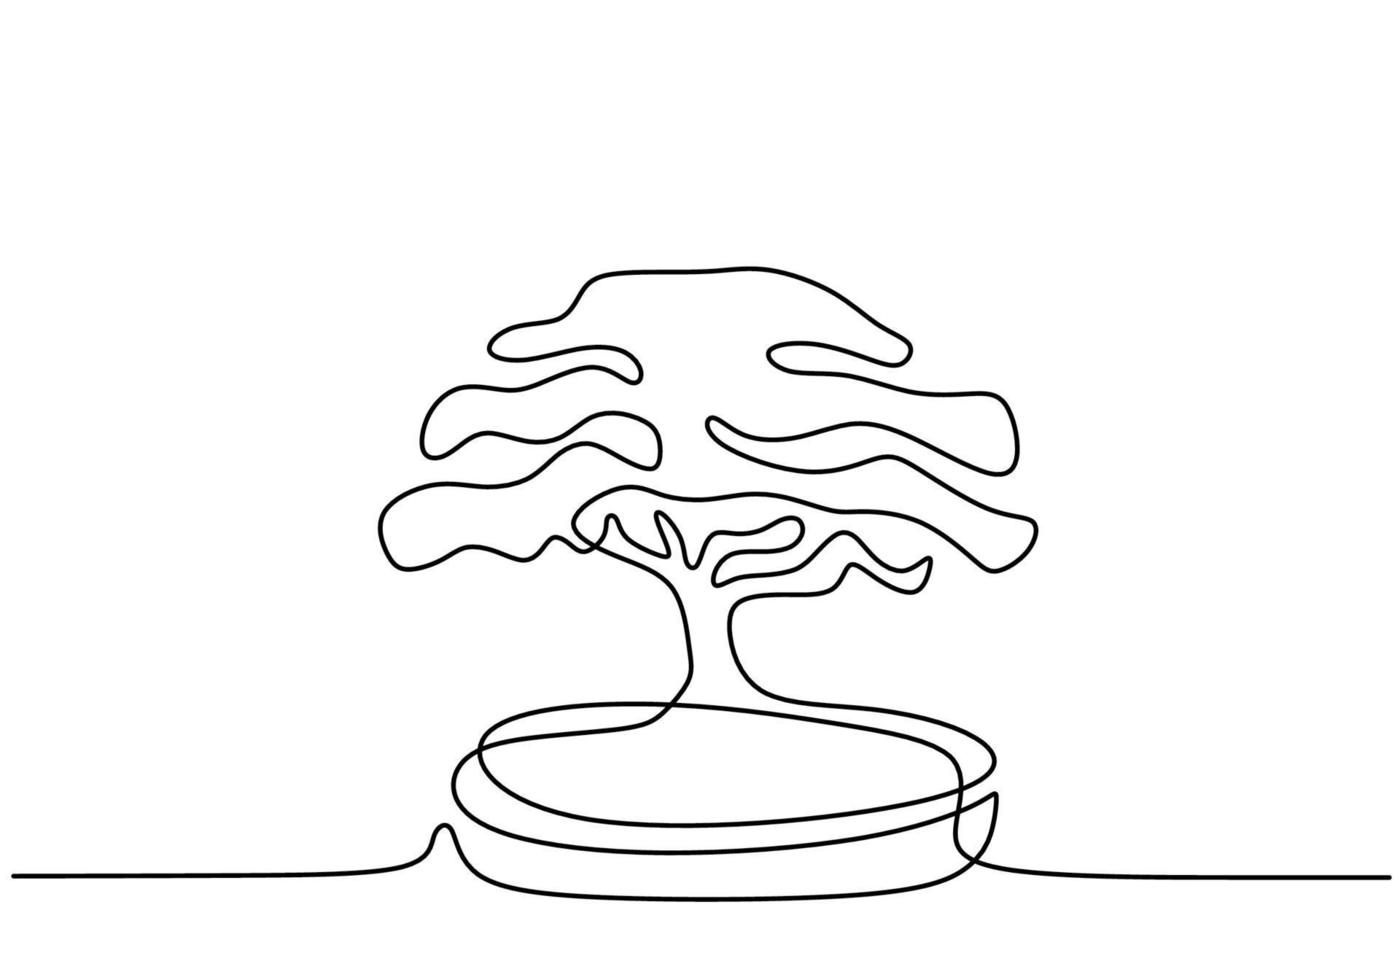 árvore de bonsai decorativa em vasos contínuos de um desenho de linha. beleza antiga exótica pequena árvore bonsai para decoração de parede de arte em casa. antigo estilo minimalista de planta em vaso em fundo branco. vetor